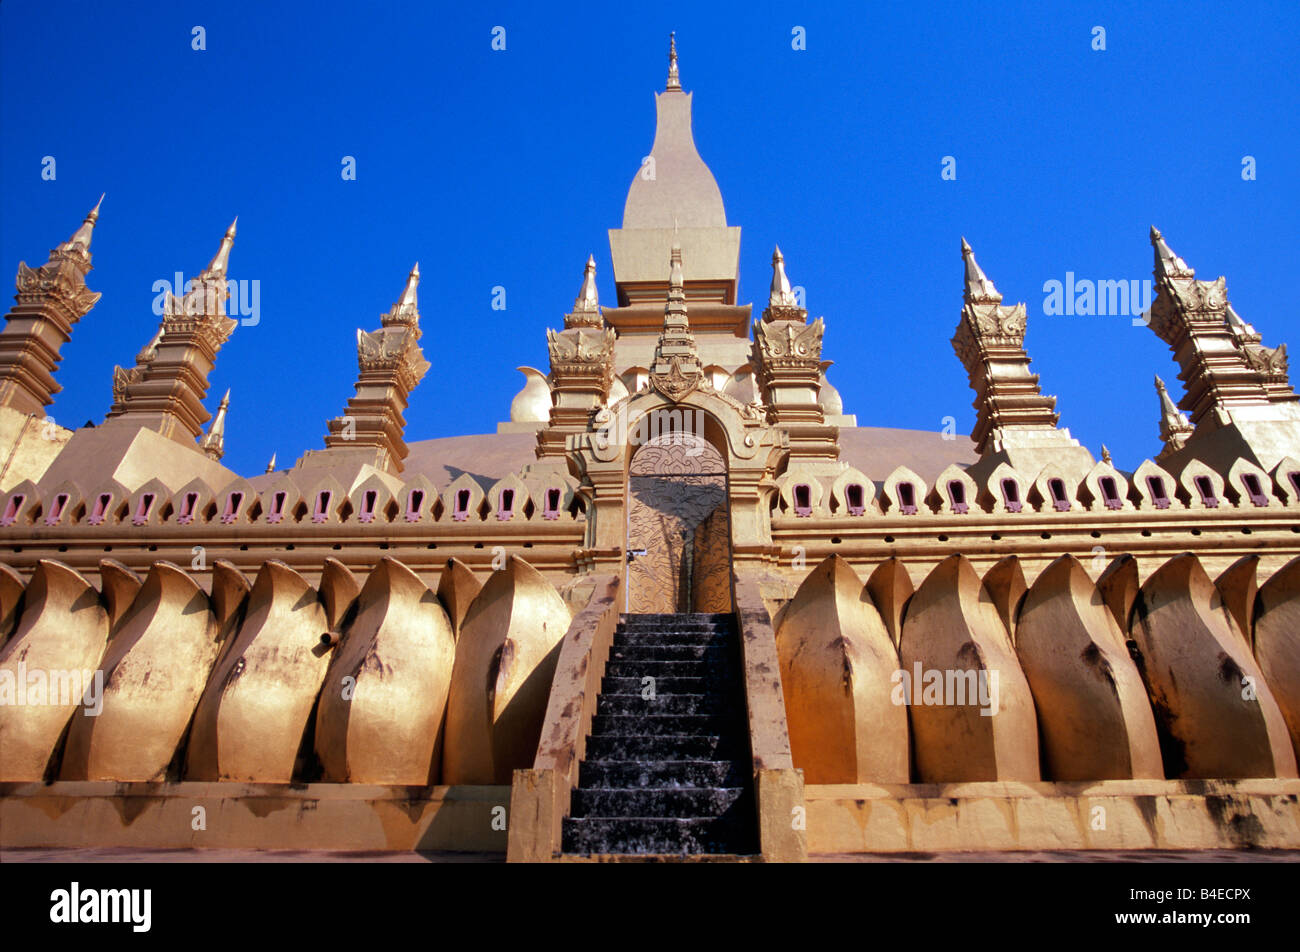 Il più importante monumento religioso in Laos, il tempio dorato Pha That Luang si trova nella città capitale di Vientiane. Foto Stock